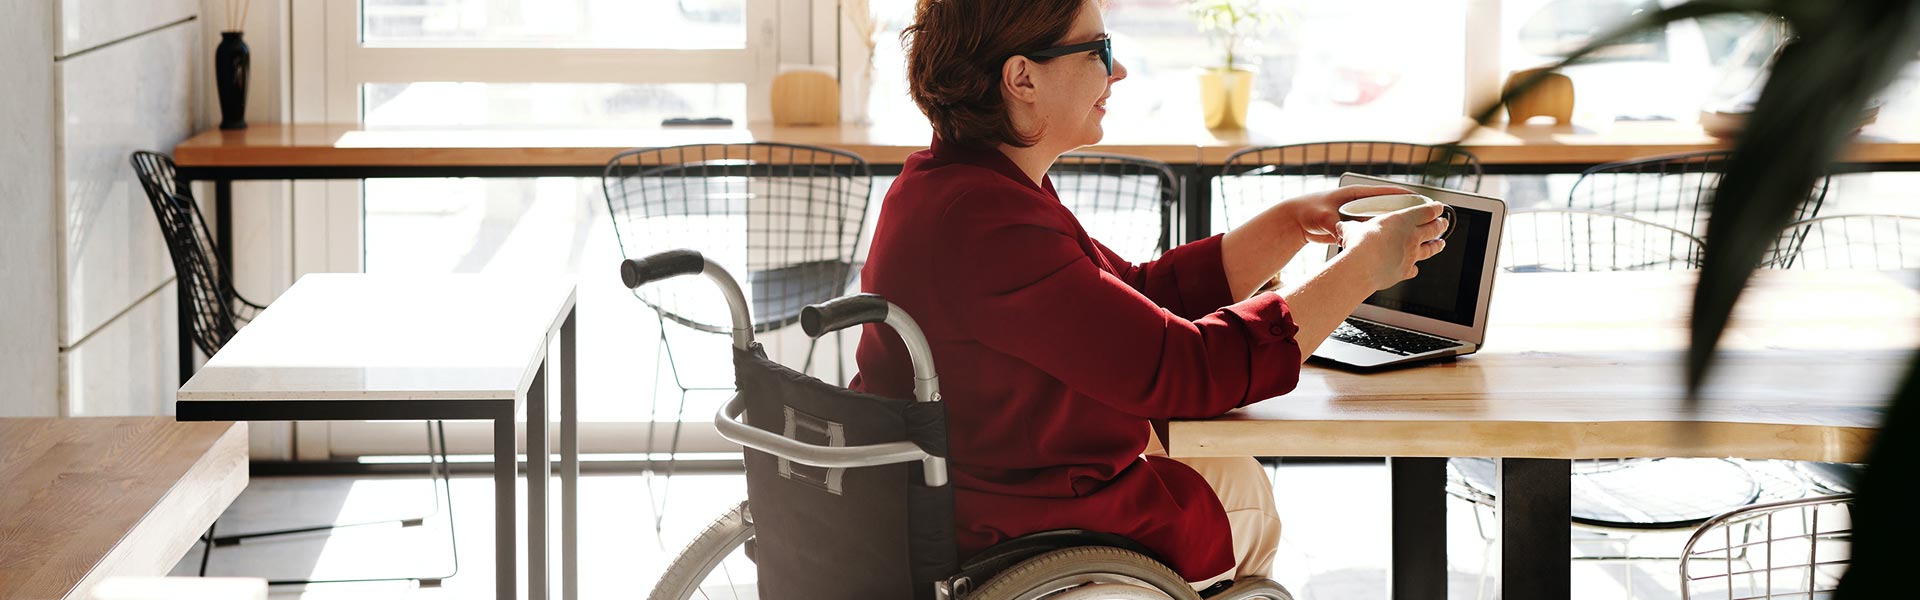 Lörrach & die Regio - lebenswertes Lörrach - Rollstuhlfahrerin im Cafe